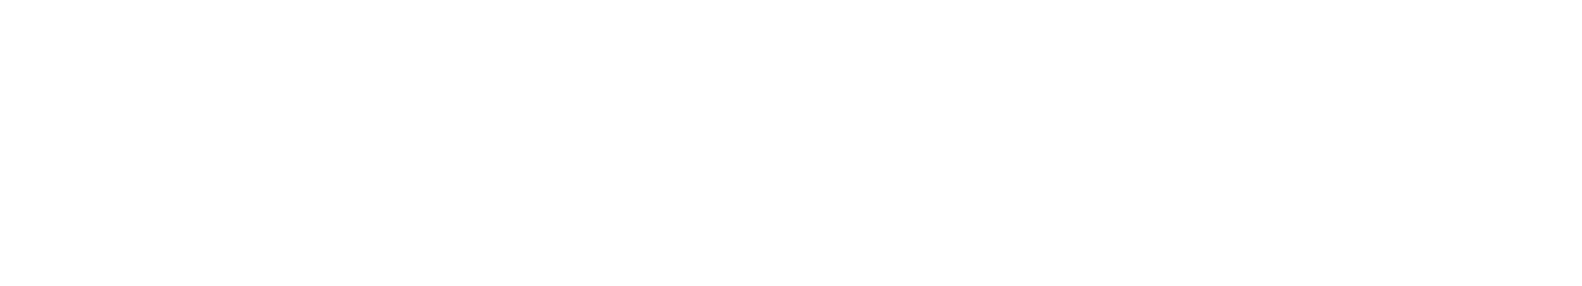 Century Communities
 logo grand pour les fonds sombres (PNG transparent)